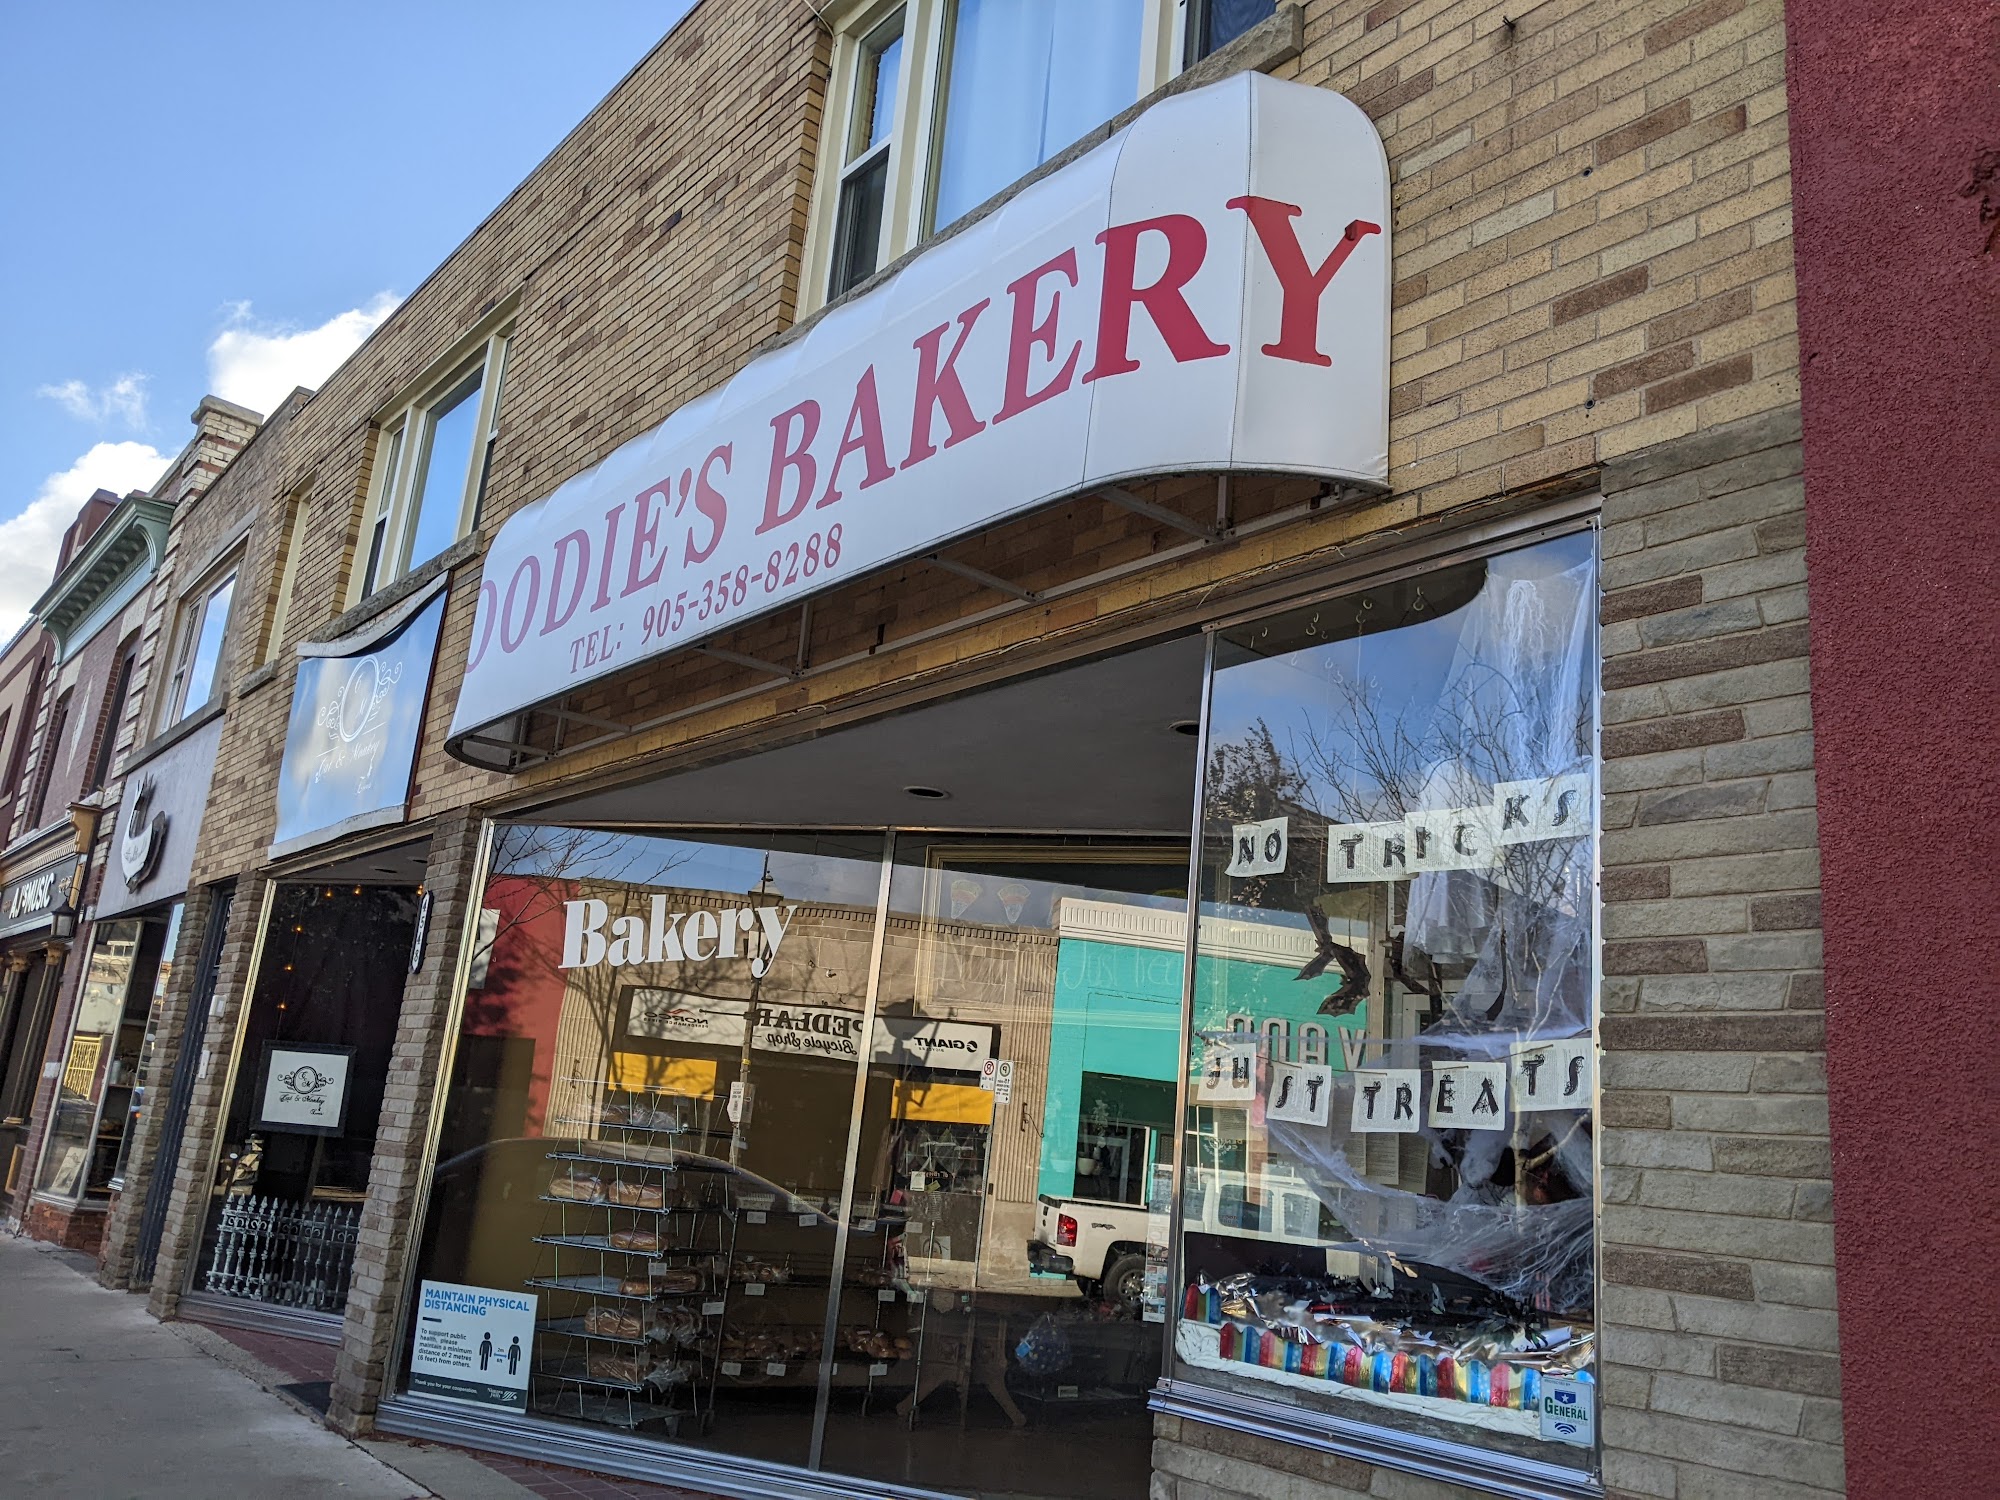 Moodie's Bakery